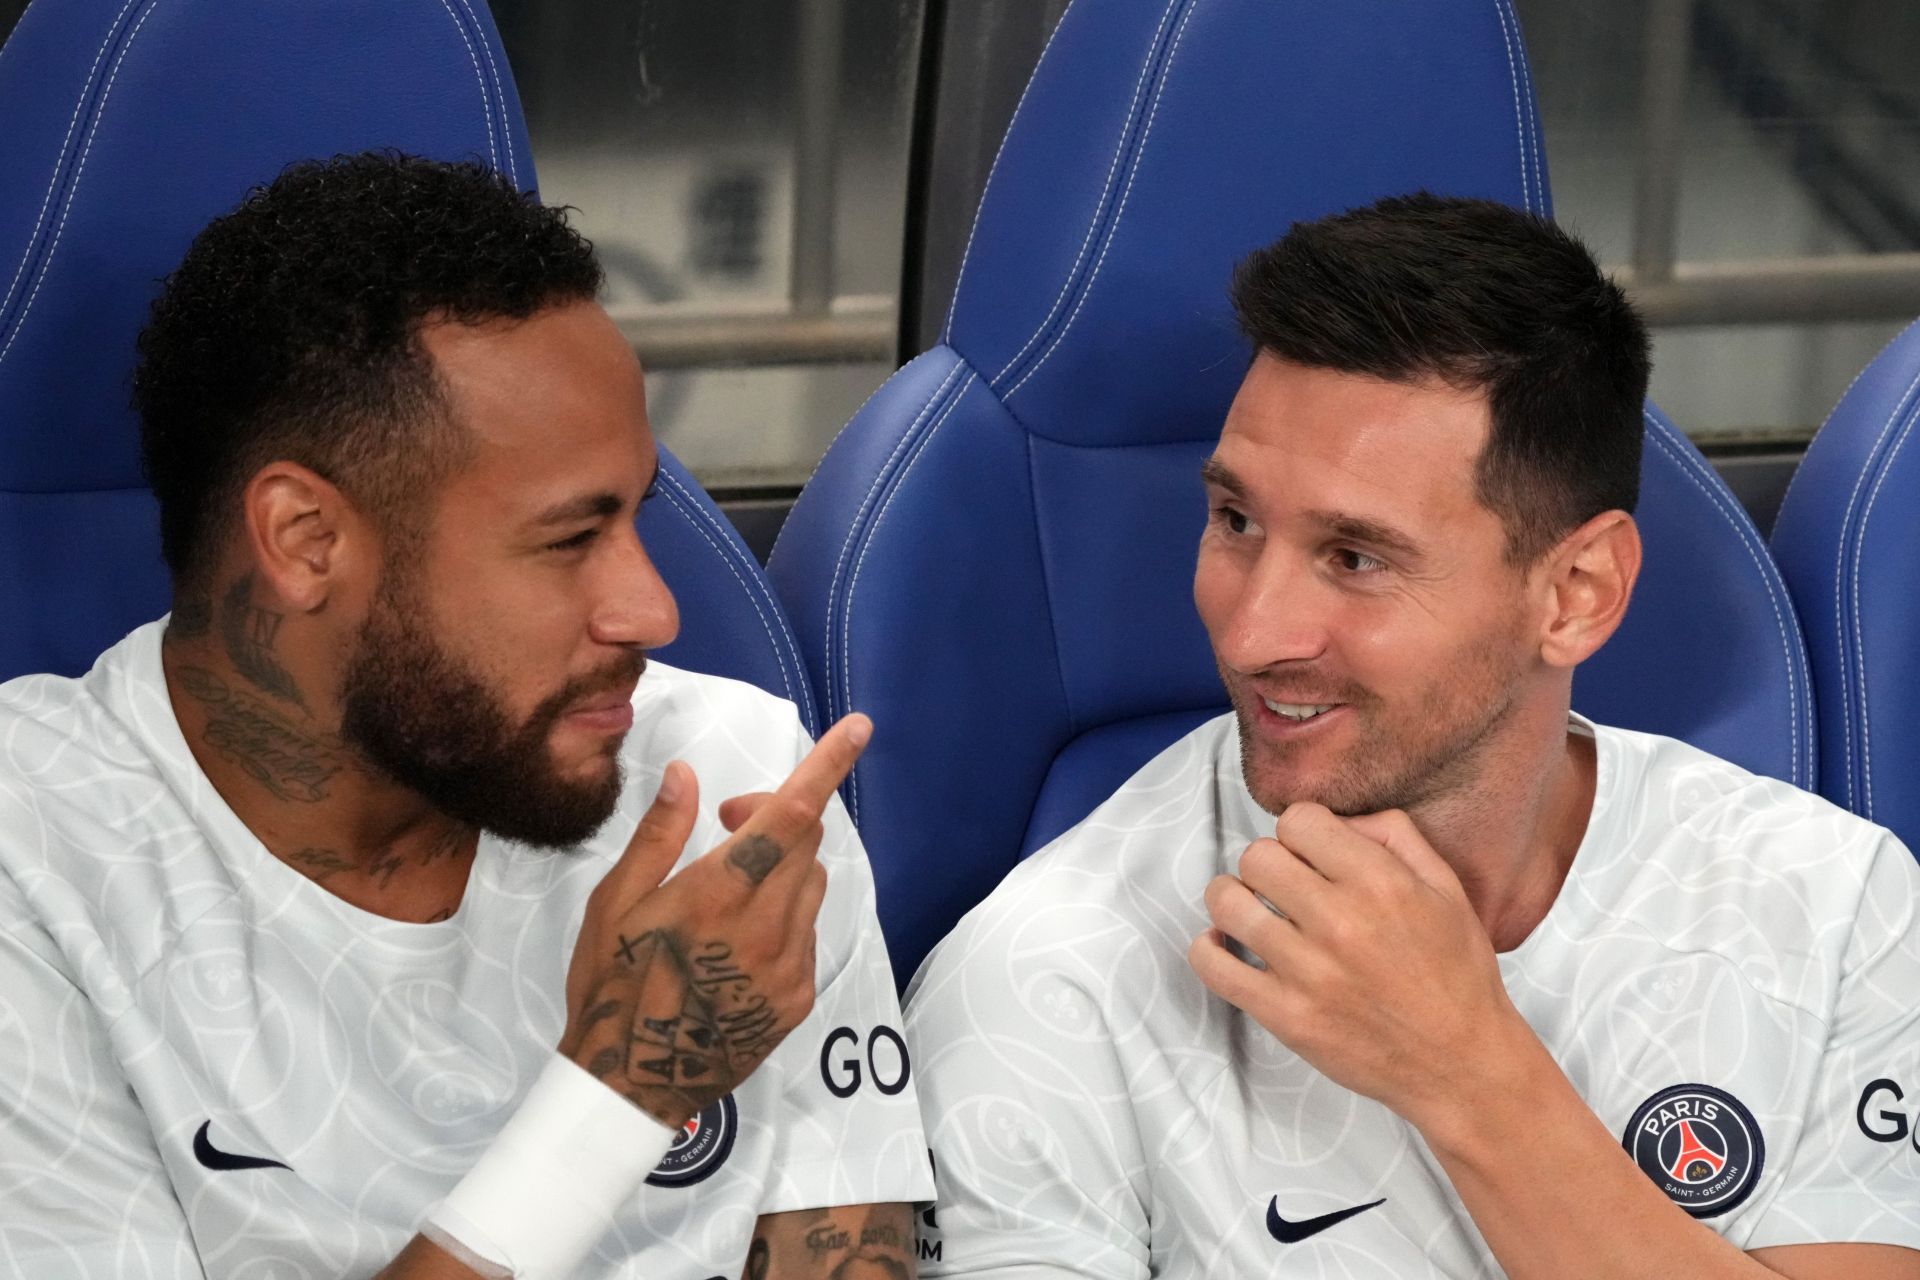 PSG stars Neymar and Messi